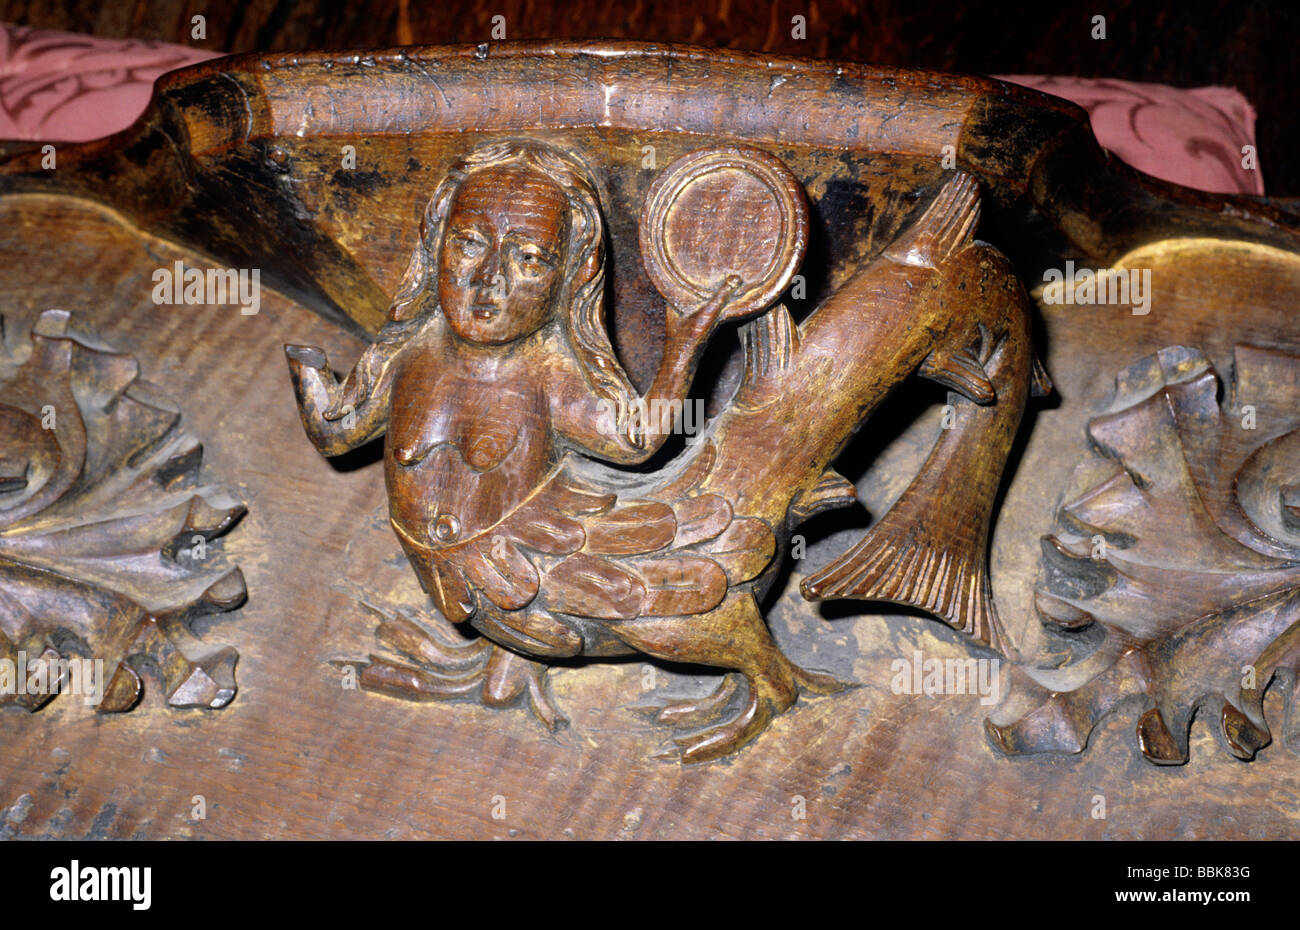 Cathédrale de Carlisle Misericord créature mythique 15e siècle sculpture sur bois médiévale Cumbria England UK English cathédrales Banque D'Images